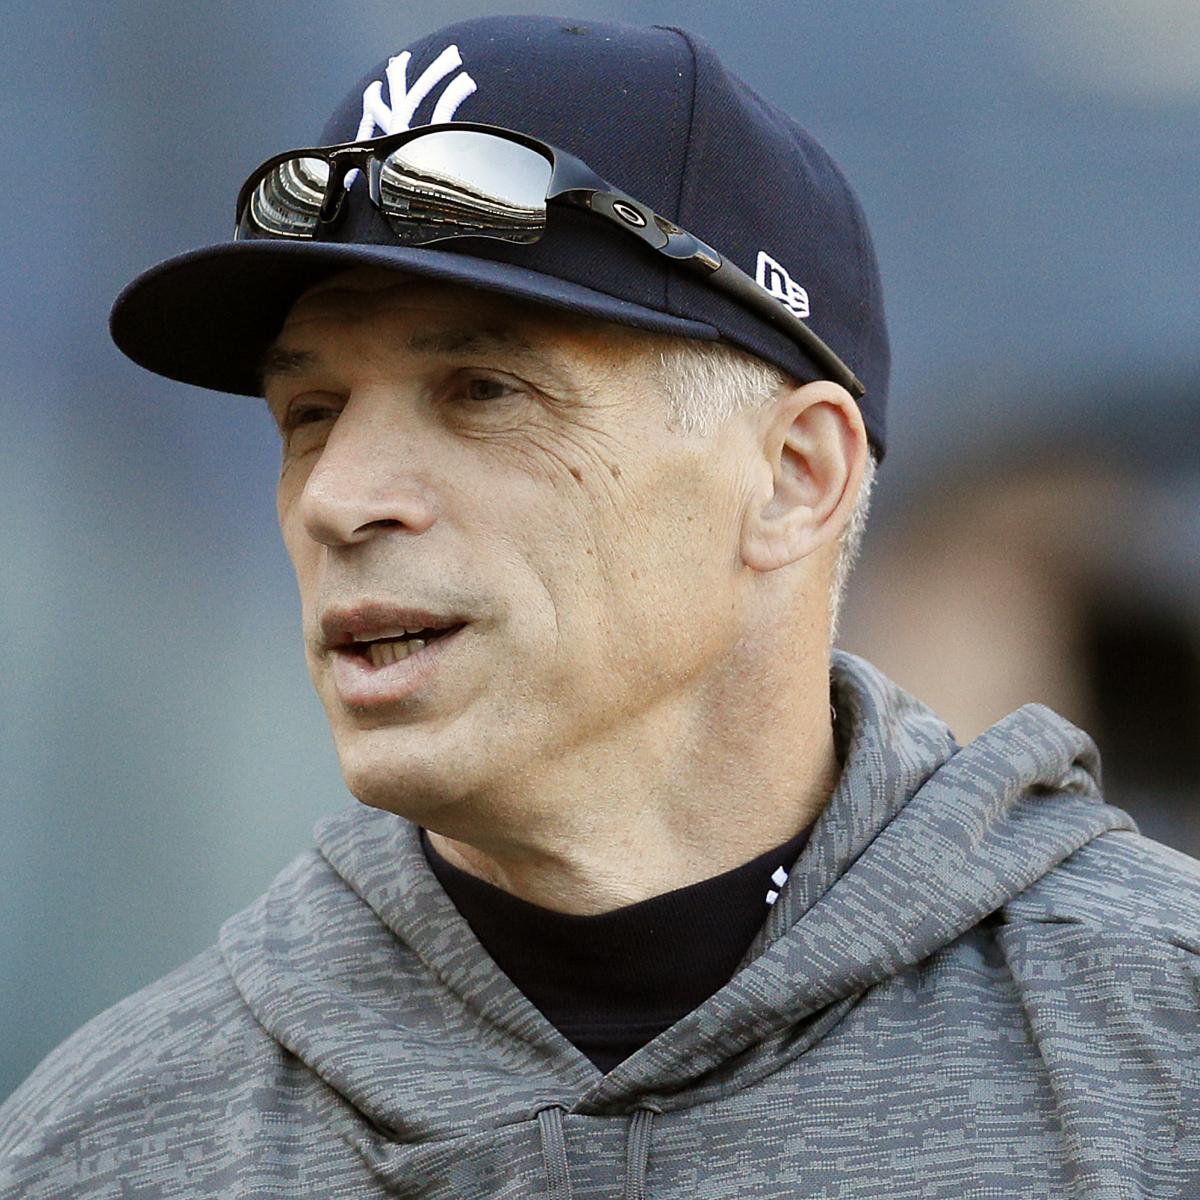 Joe Girardi From Engineer to Yankees Manager - ASME